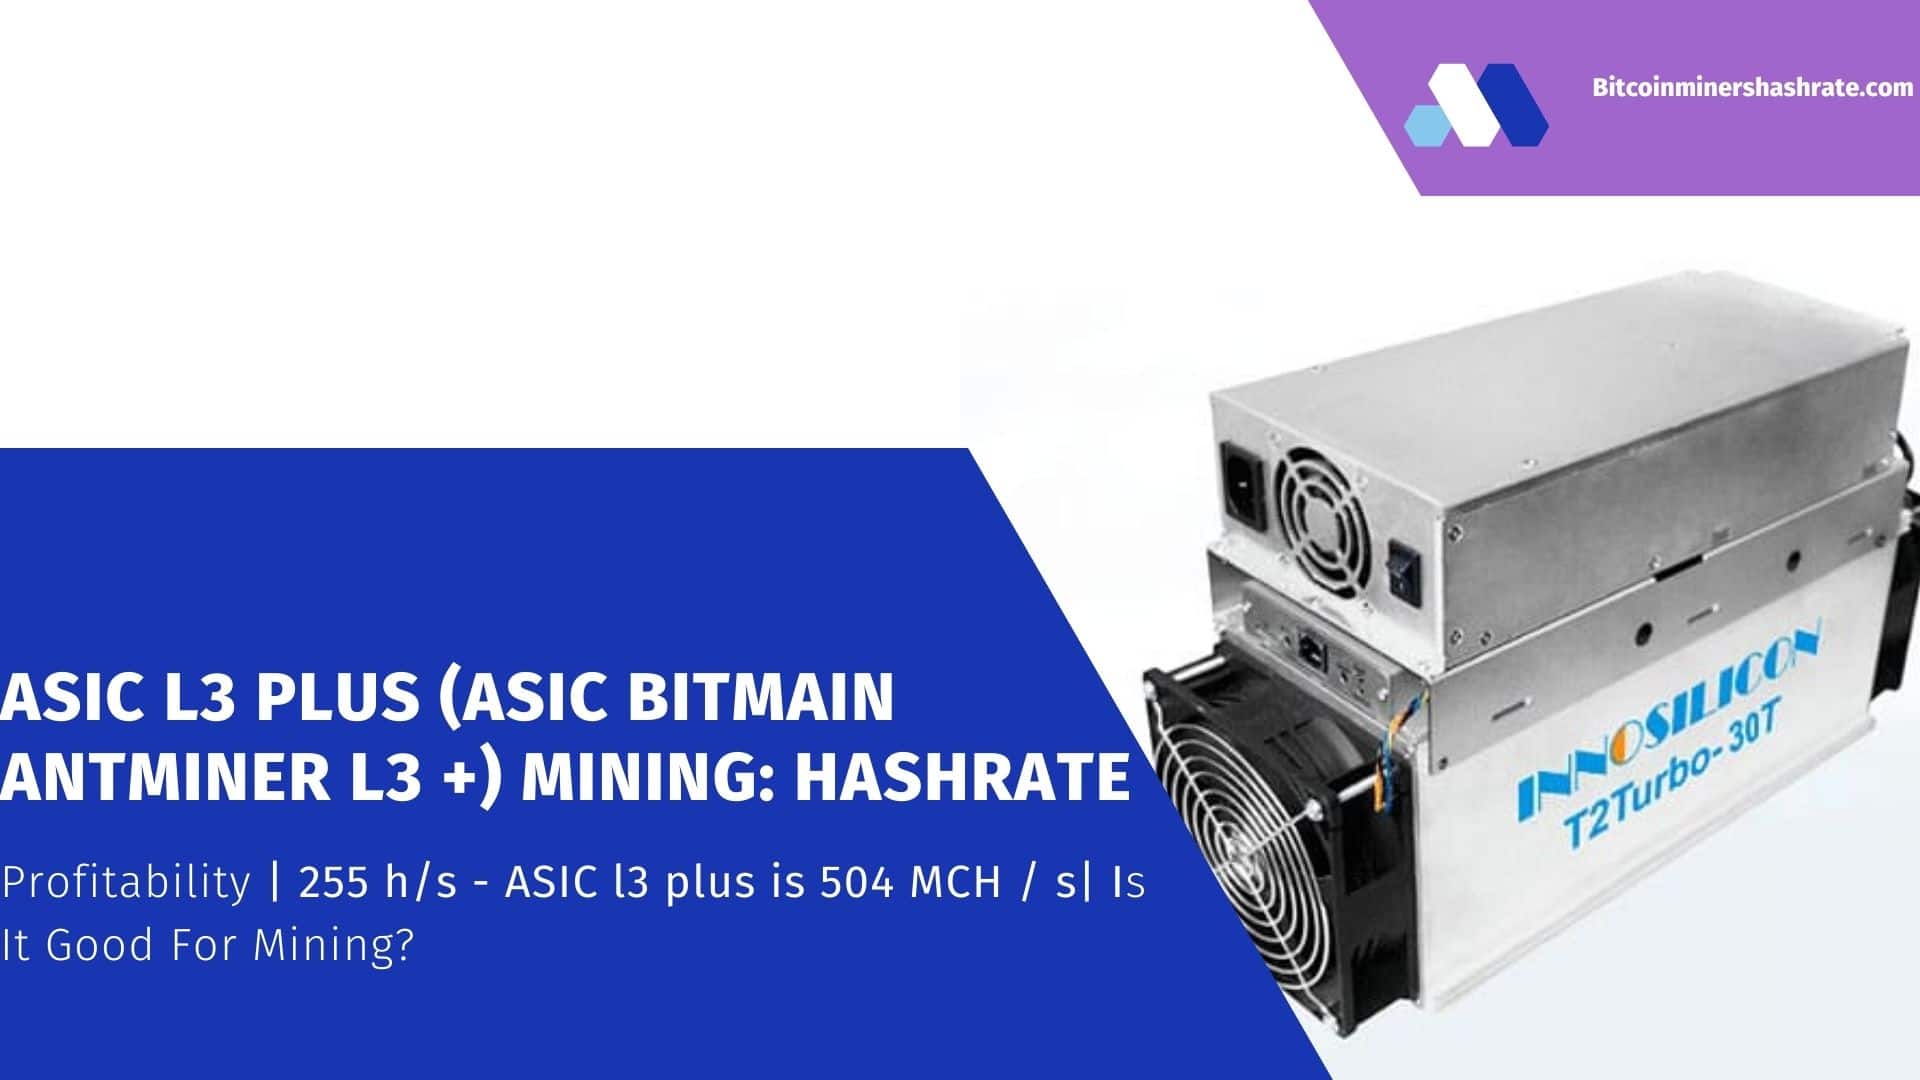 Asic L3 plus (Asic Bitmain Antminer L3 +) Mining Hashrate